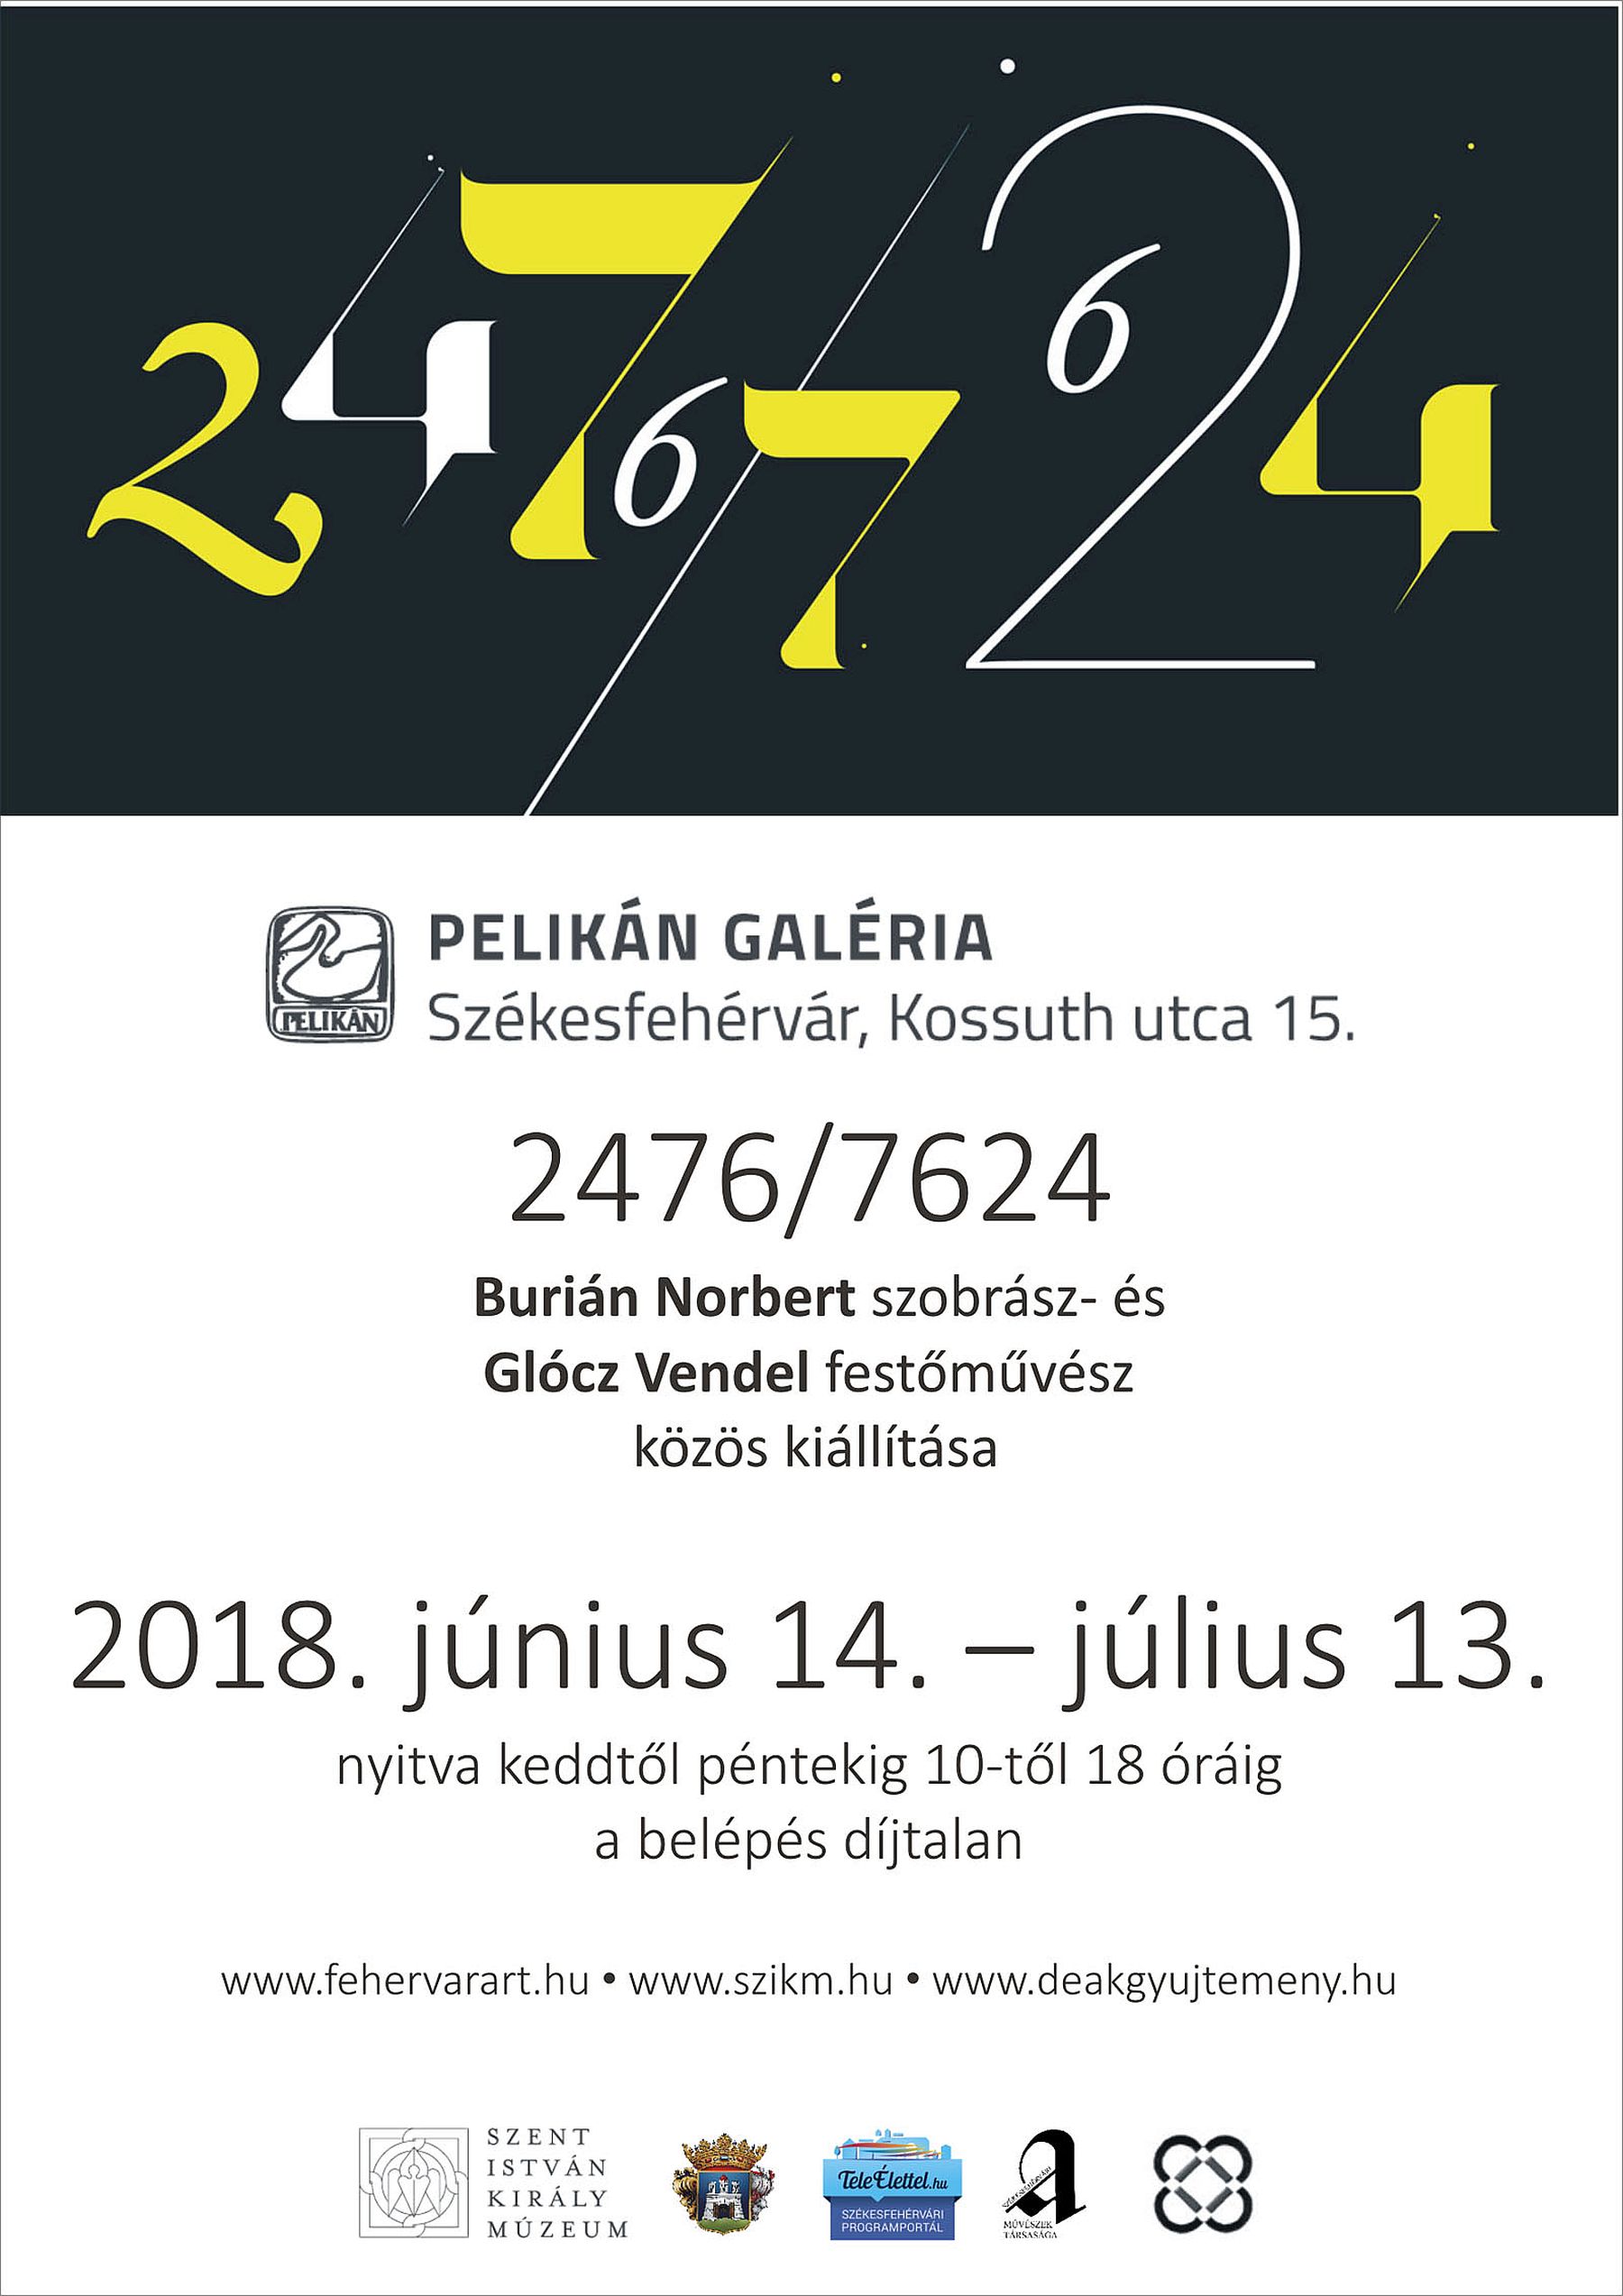 „2476/7624” - Burián Norbert szobrász és Glócz Vendel festőművész kiállításának megnyitója